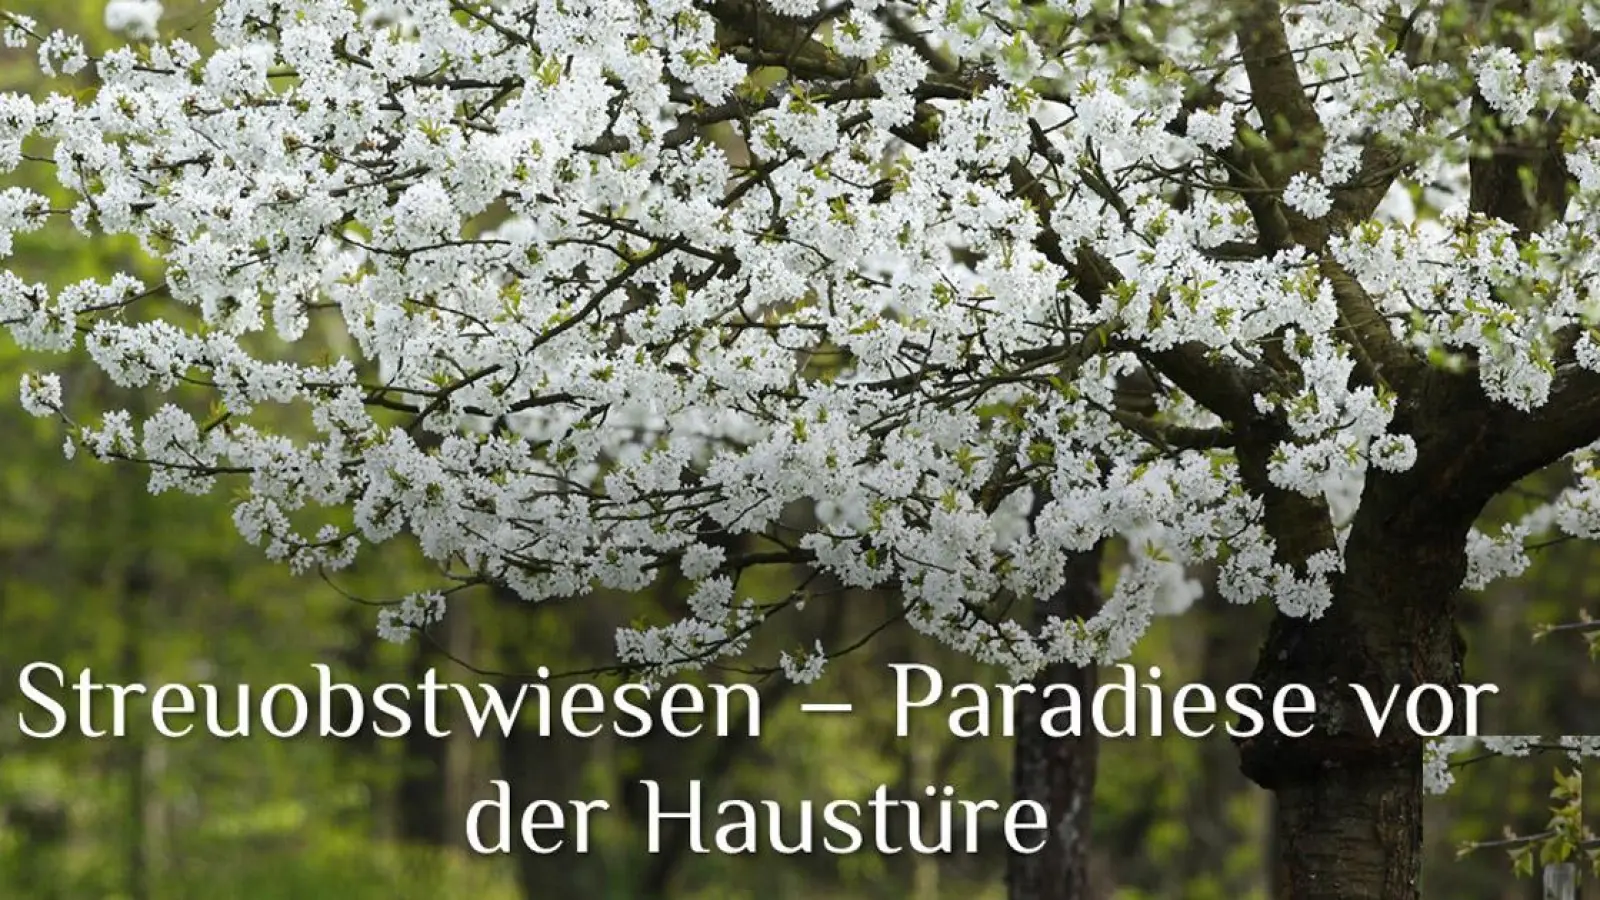 Streuobstwiesen – Paradiese vor der Haustüre (Foto: inBayreuth.de)